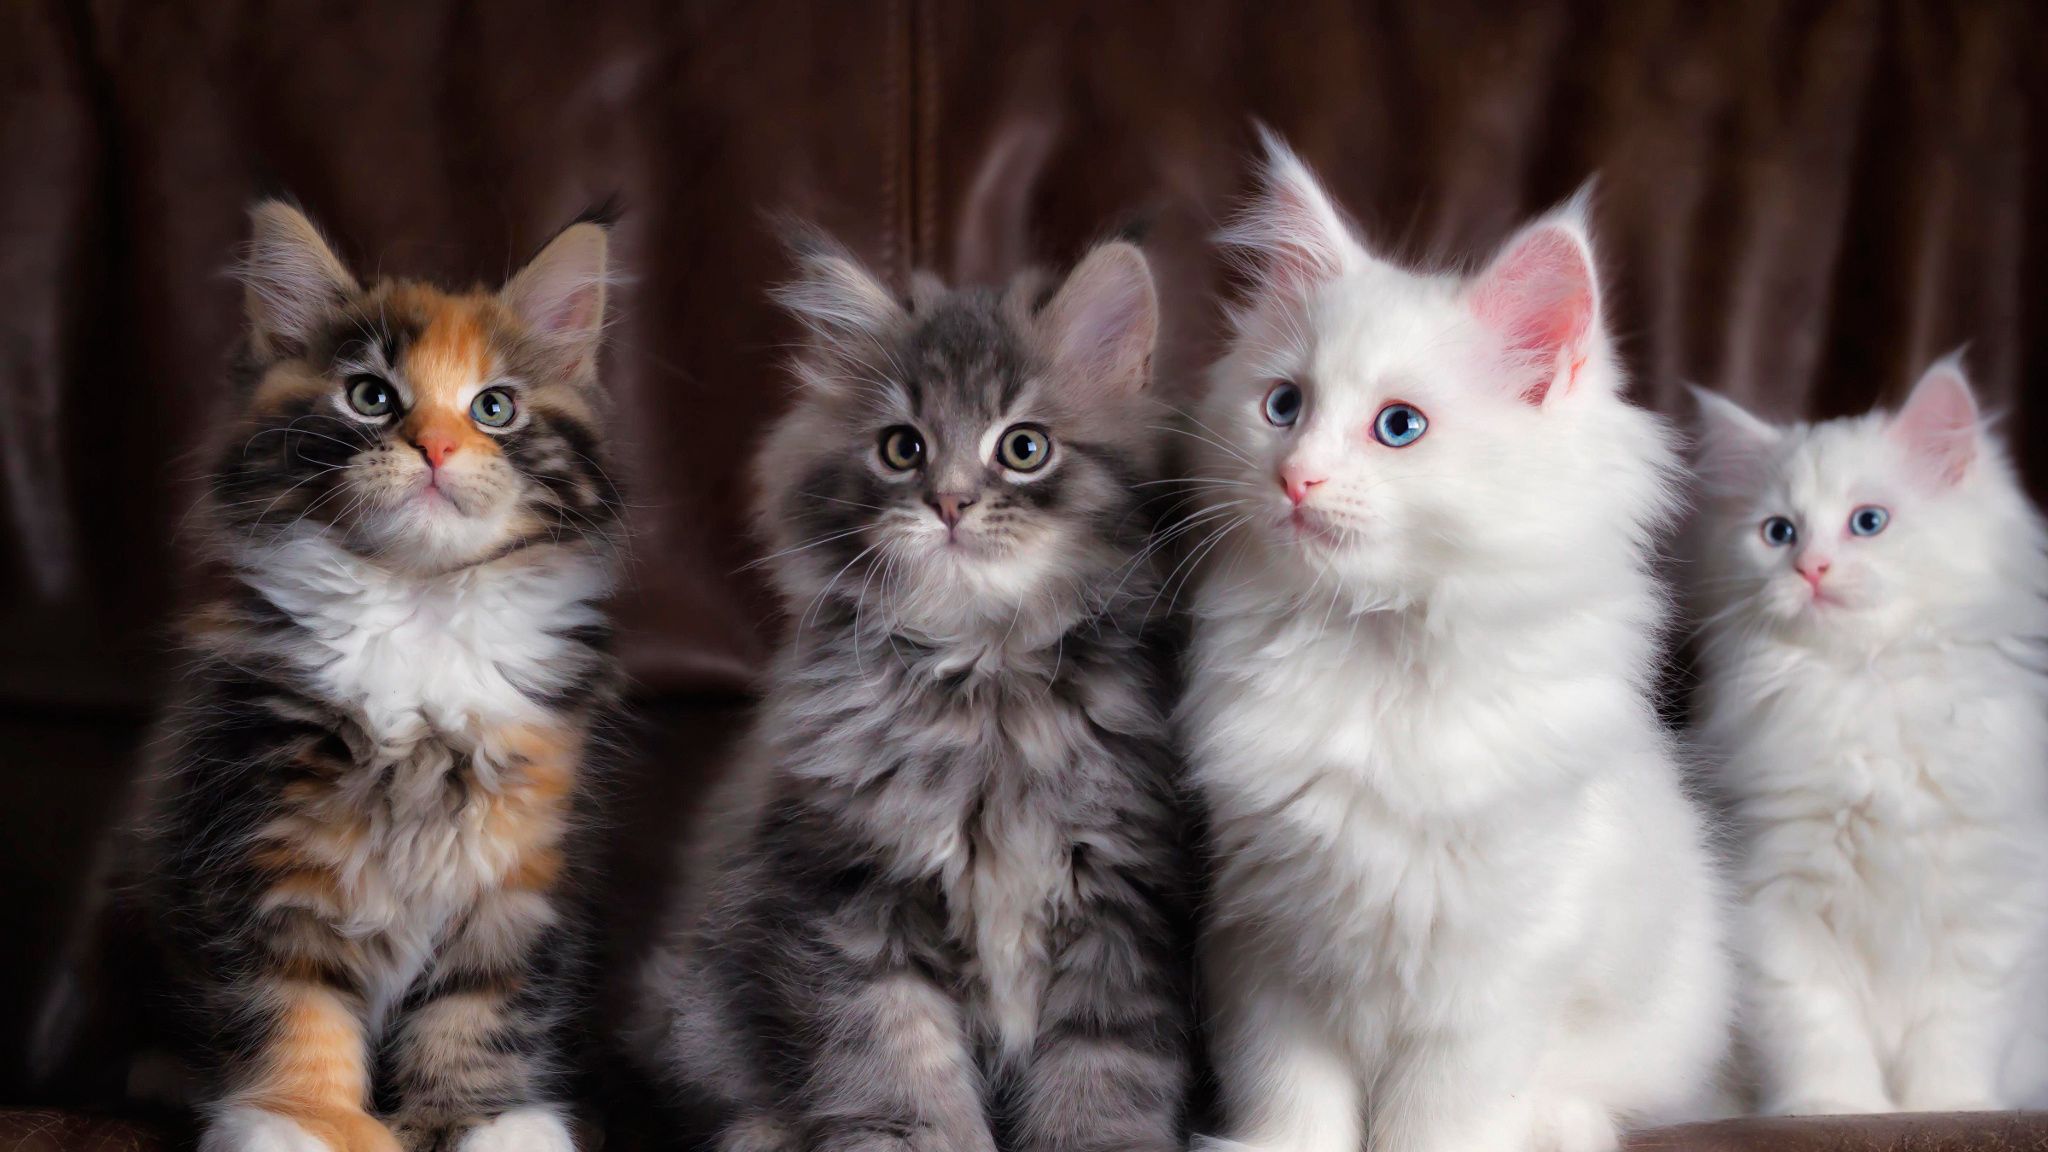 Hình nền Kittens: Đừng bỏ lỡ cơ hội để sở hữu những hình nền vô cùng đáng yêu về mèo con nhỏ tinh nghịch. Với các chủ đề đa dạng, từ dễ thương đến nghệ thuật, bạn chắc chắn sẽ tìm thấy bức hình ưng ý nhất để trang trí cho điện thoại hoặc máy tính của mình.